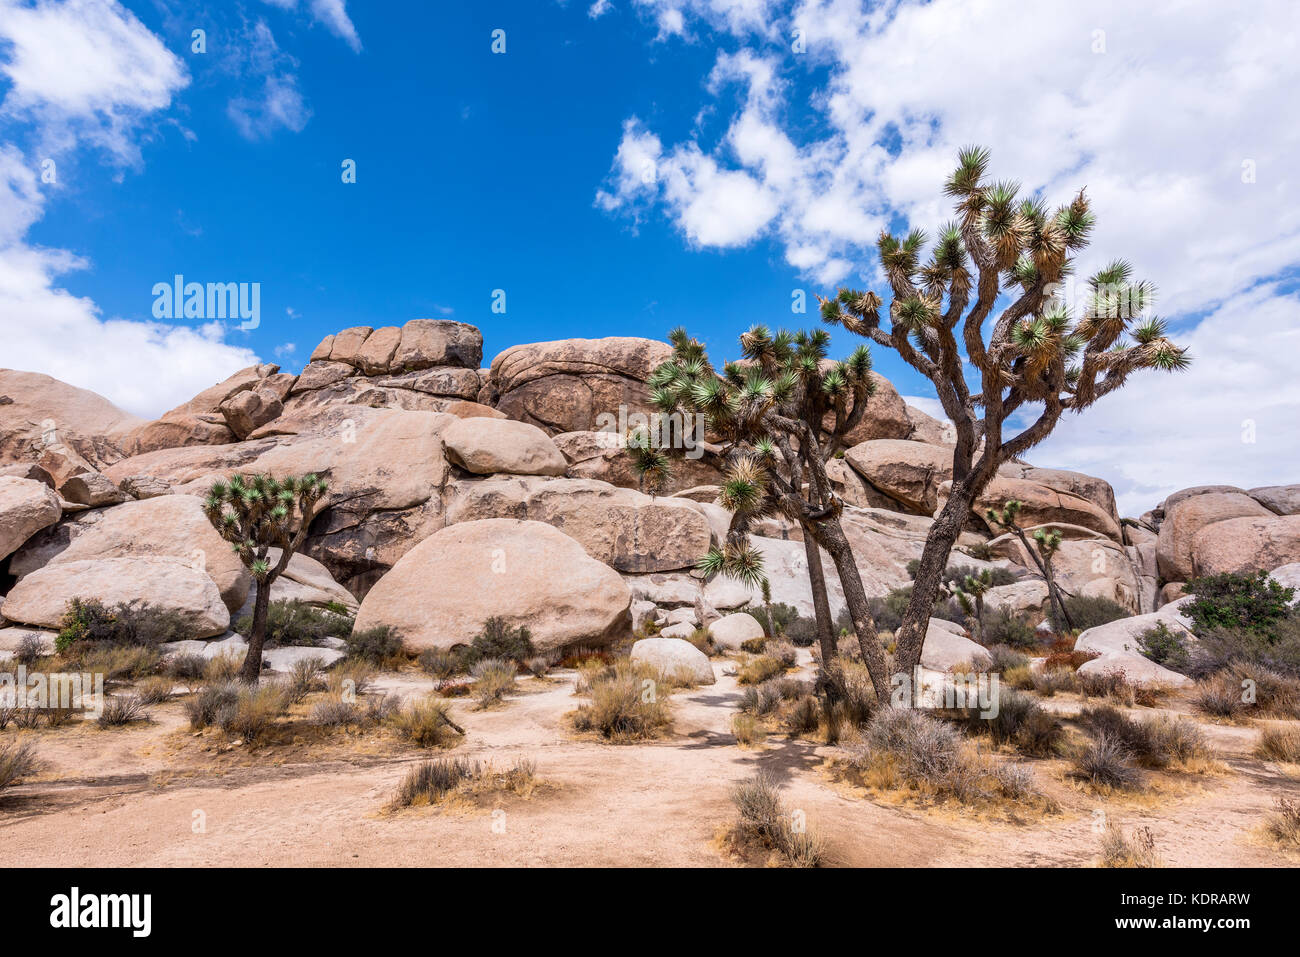 Große Joshua-Bäume umrahmen die zerklüfteten Felsformationen, die die Wüstenlandschaft umgeben. Stockfoto